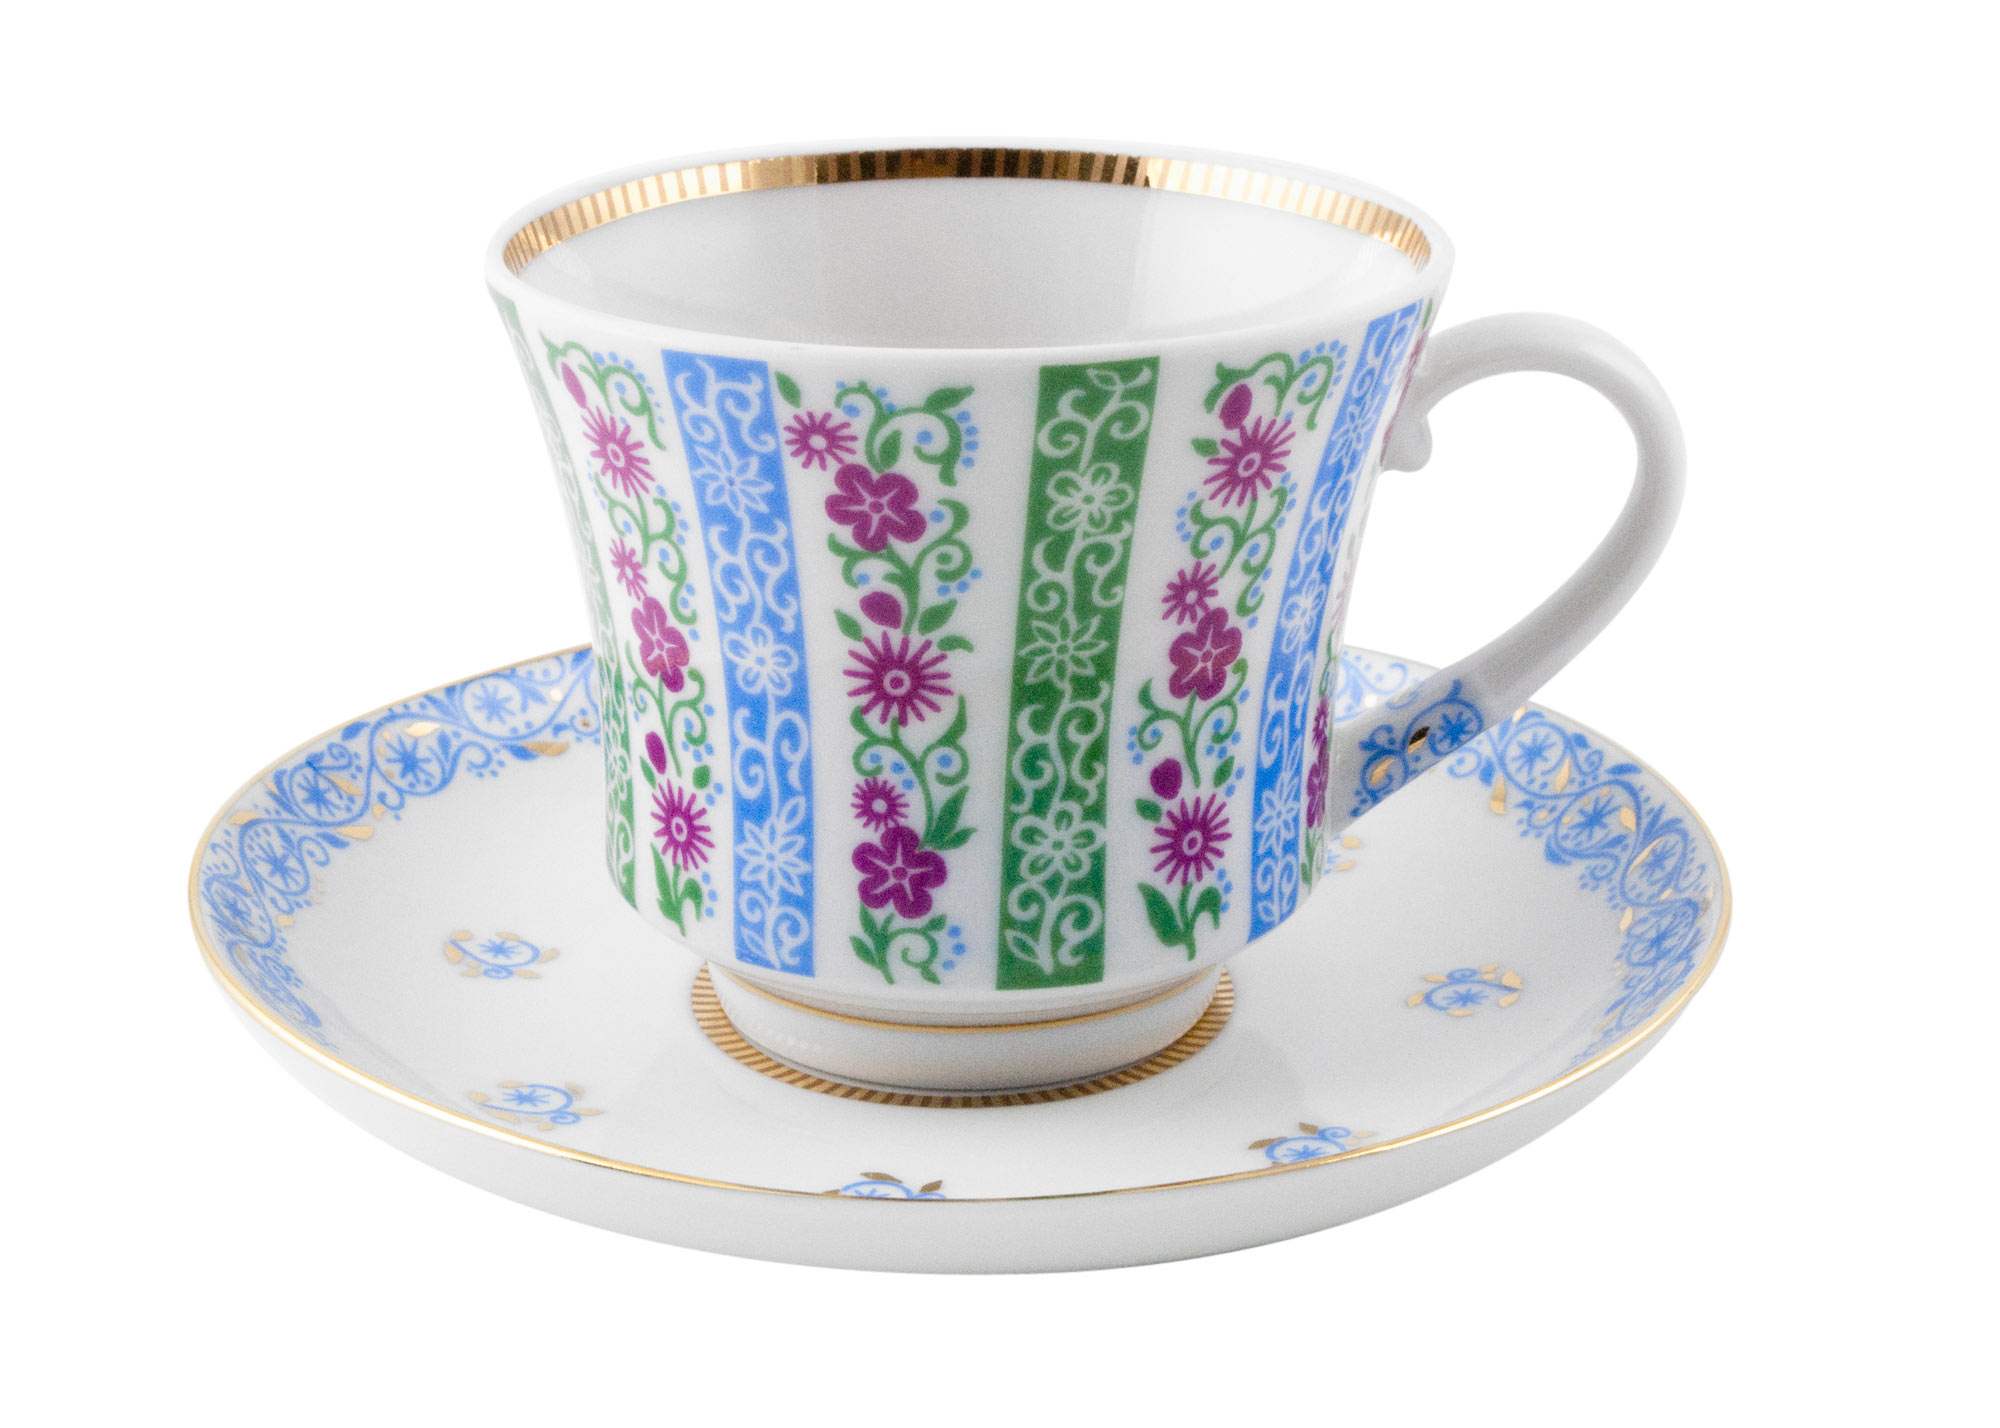 Buy Springtime Tea Cup and Saucer at GoldenCockerel.com